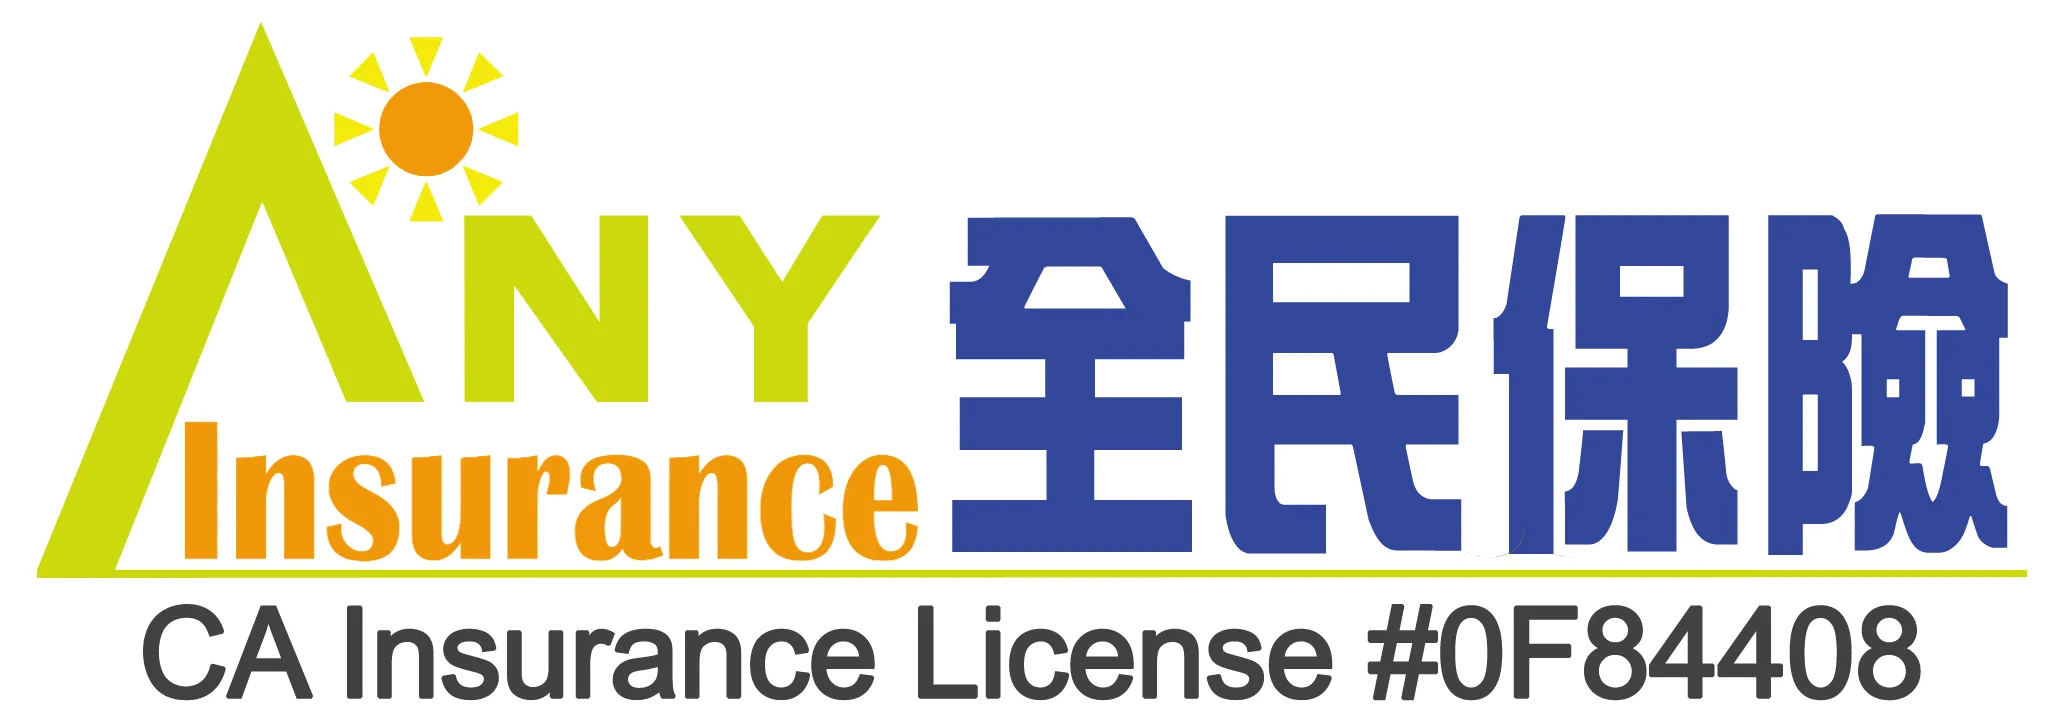 Any Insurance logo